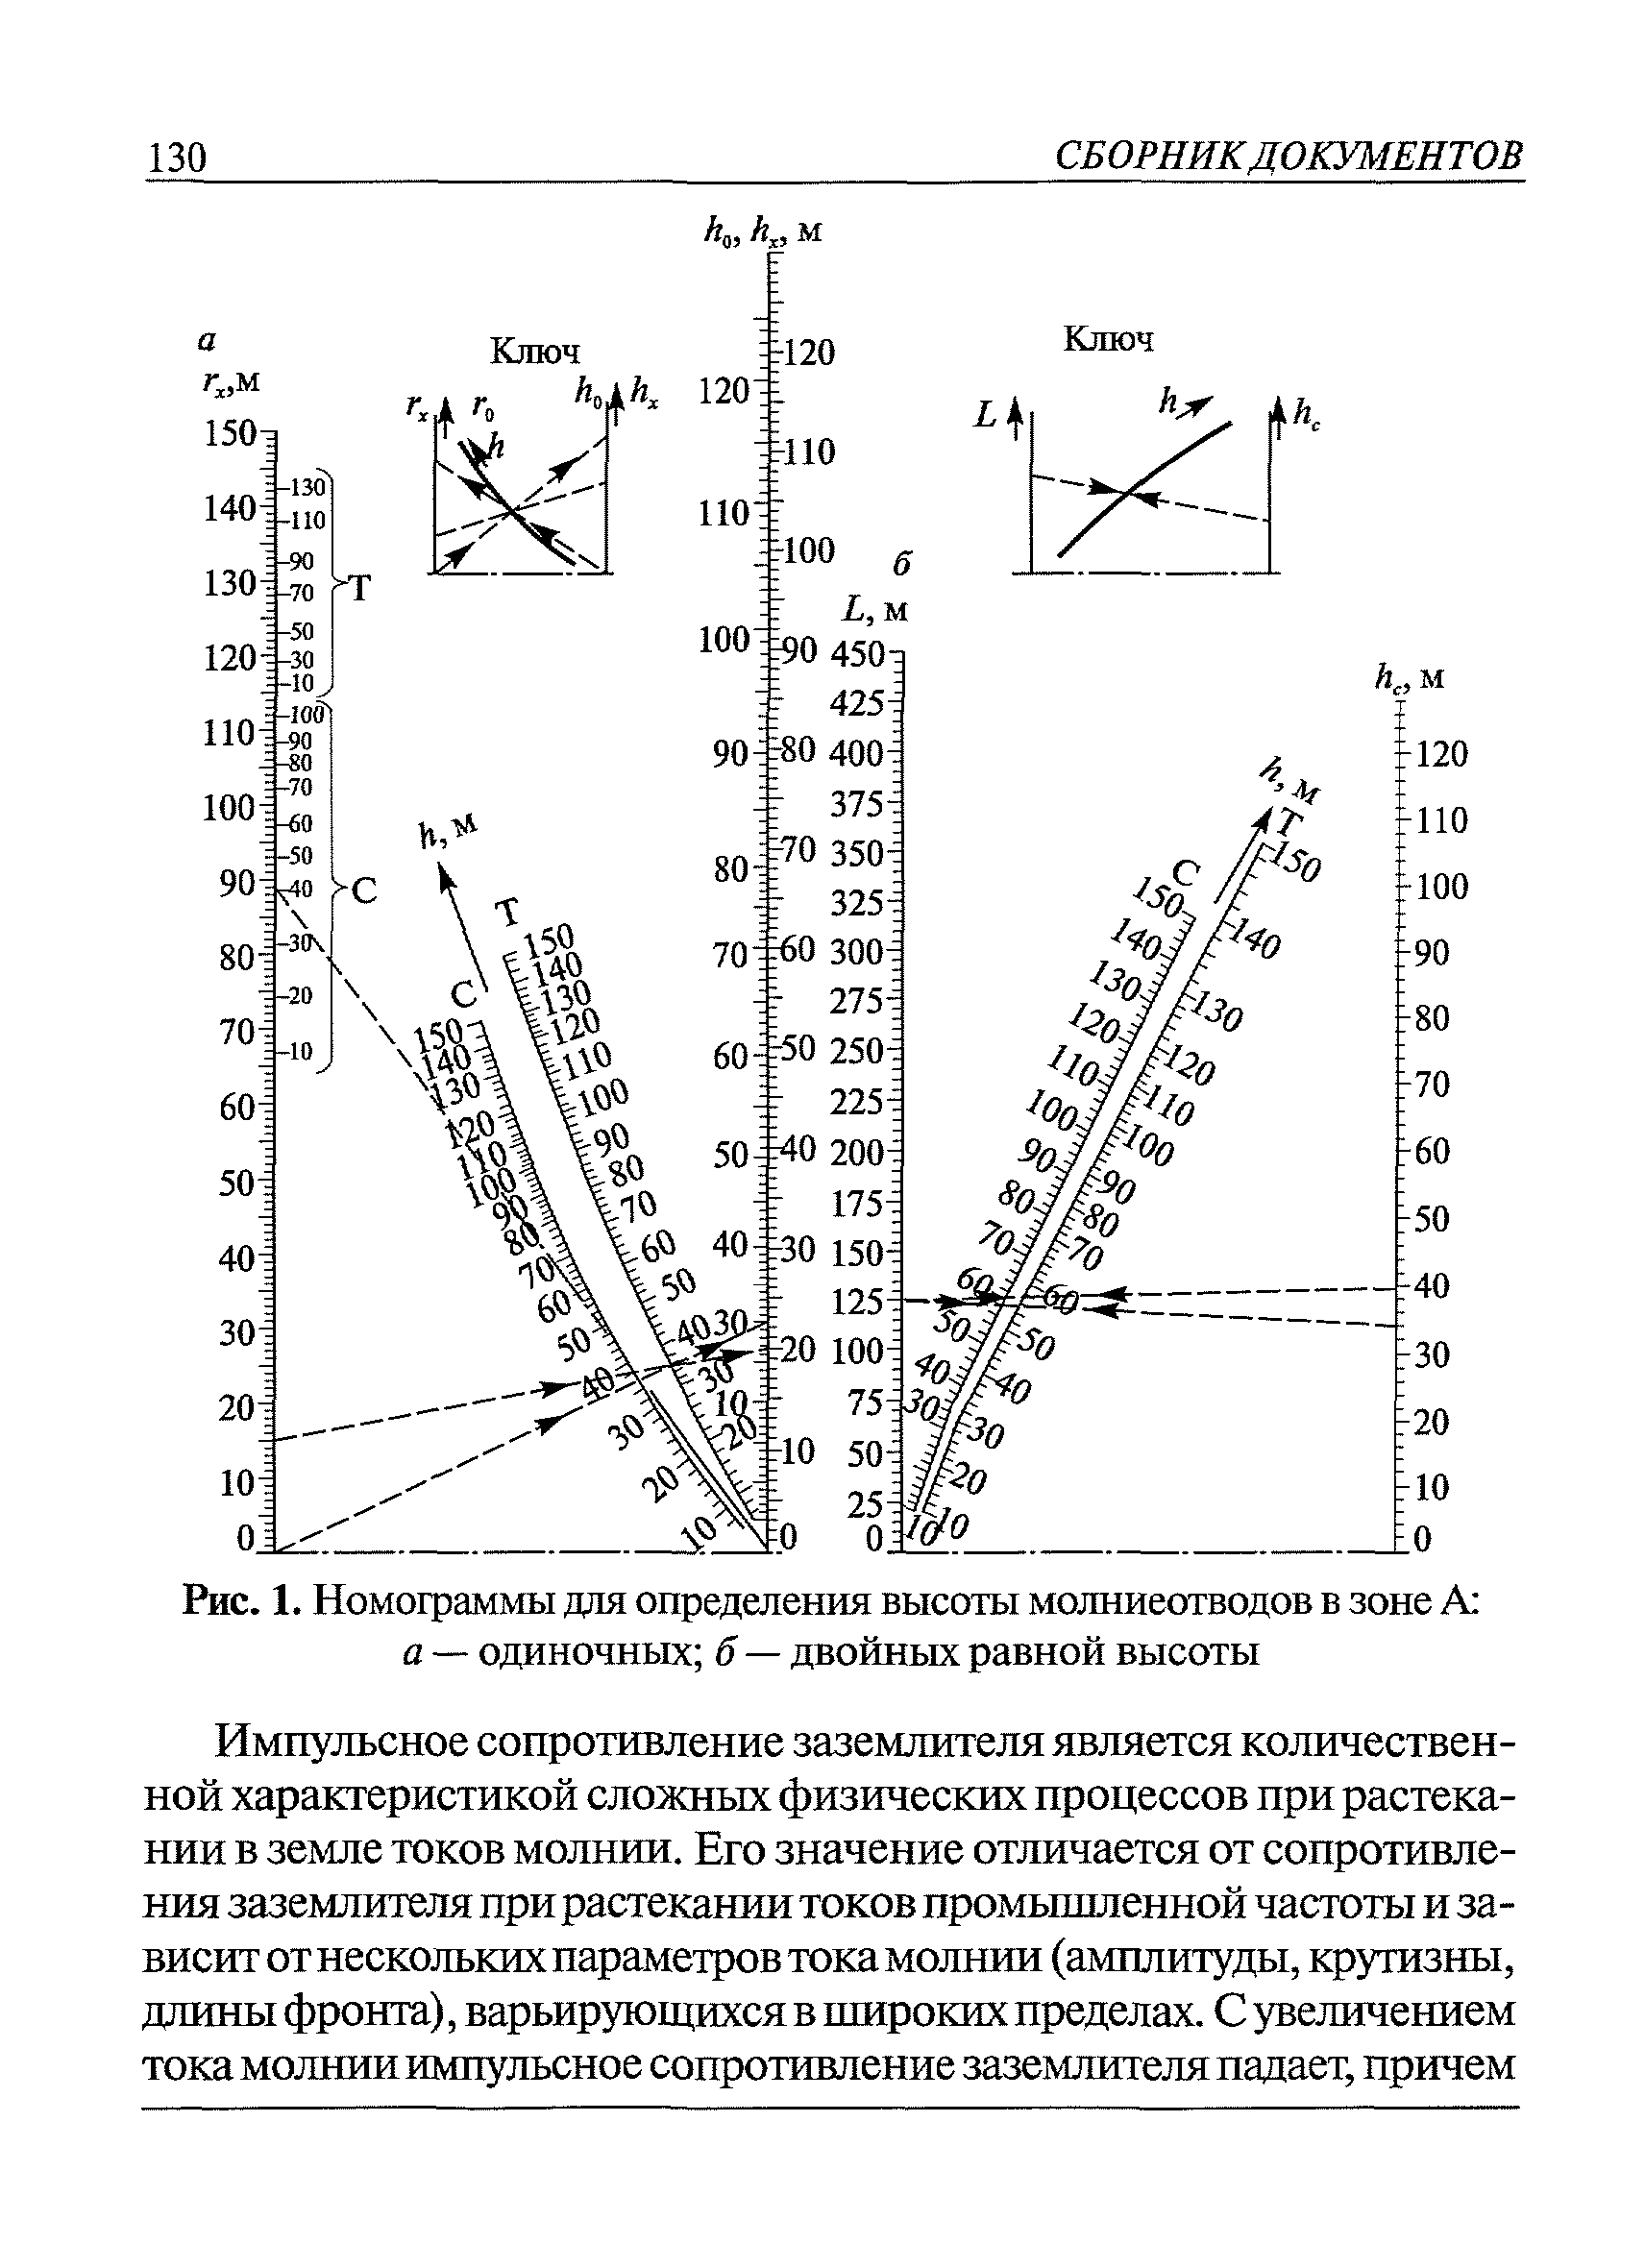 Молниеотвод РД 34.21.122-87. РД 34.21.122-87 табл.1. Номограмма для определения высоты двойного стержневого молниеотвода. К третьей категории молниезащиты, согласно РД 34.21.122-87, не относятся:.